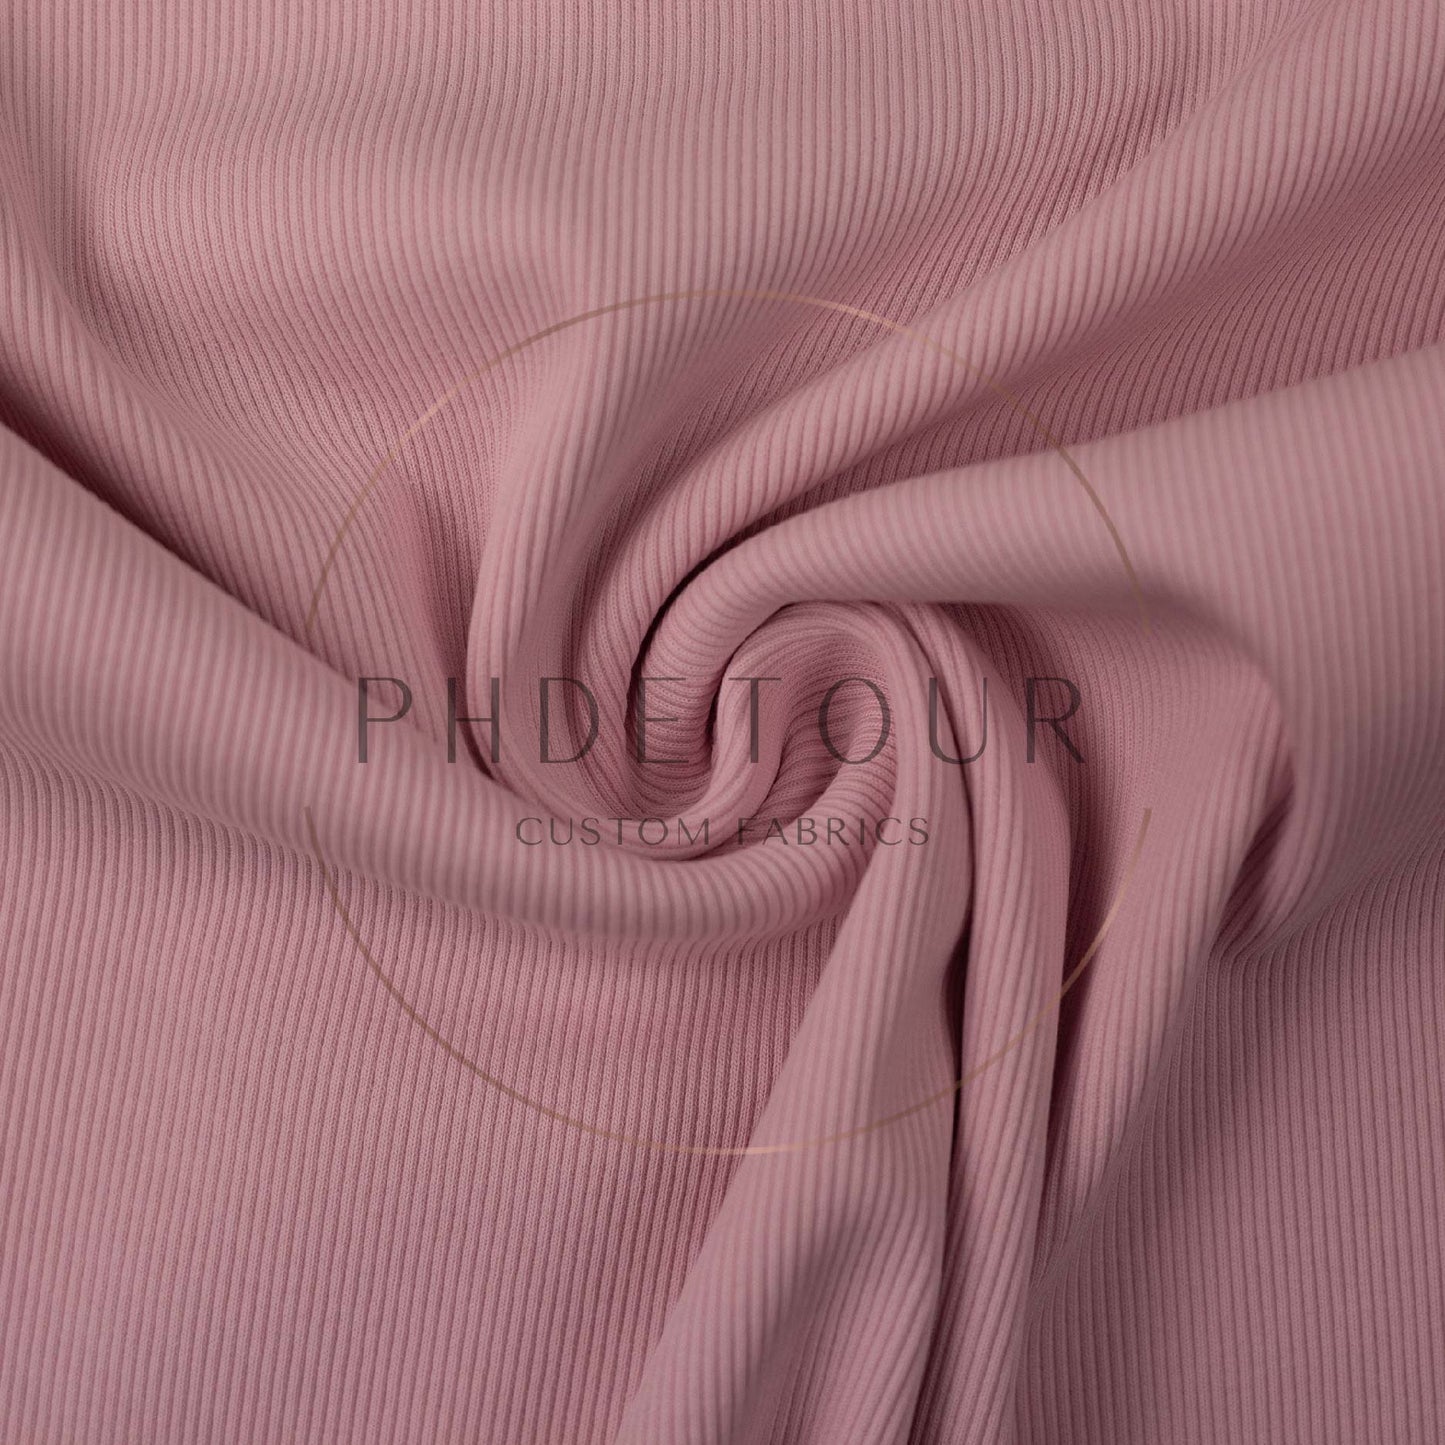 Wholesale European 2x1 Sweatshirt Ribbing - 432 - Pale Pink